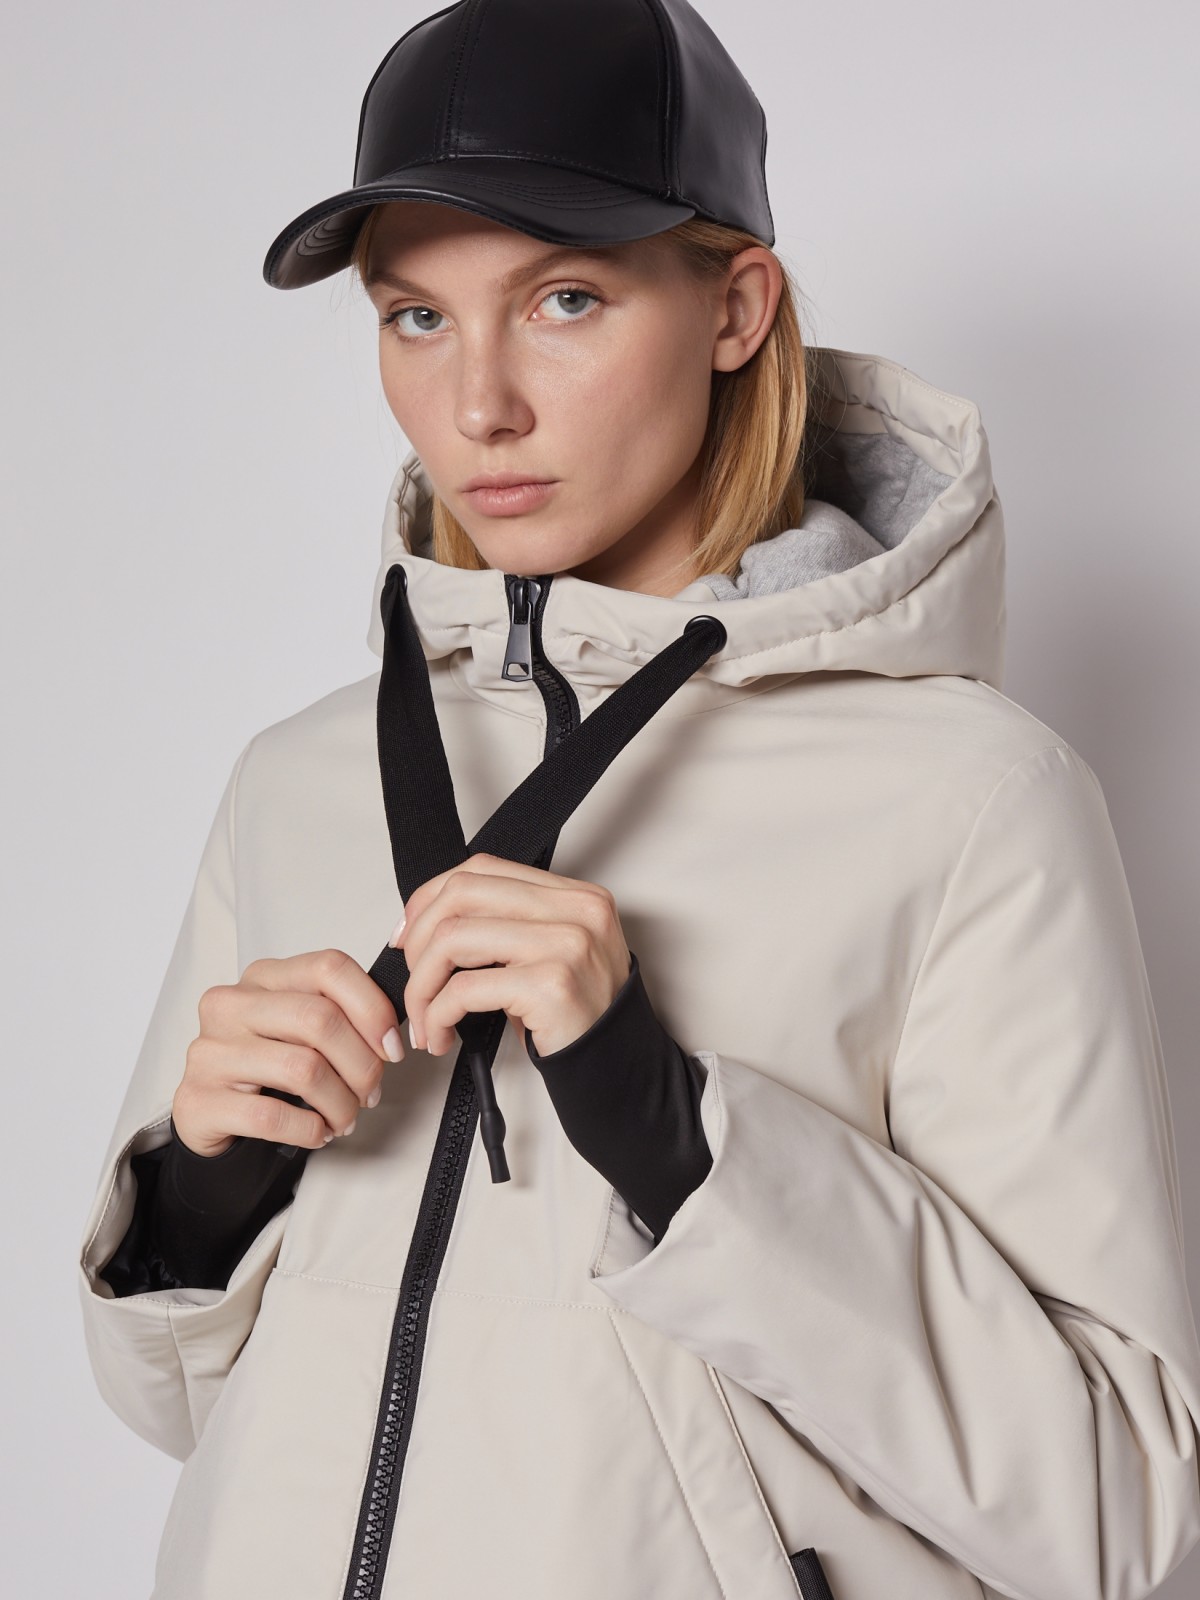 Утеплённая куртка с капюшоном zolla 022125102184, цвет молоко, размер XS - фото 3